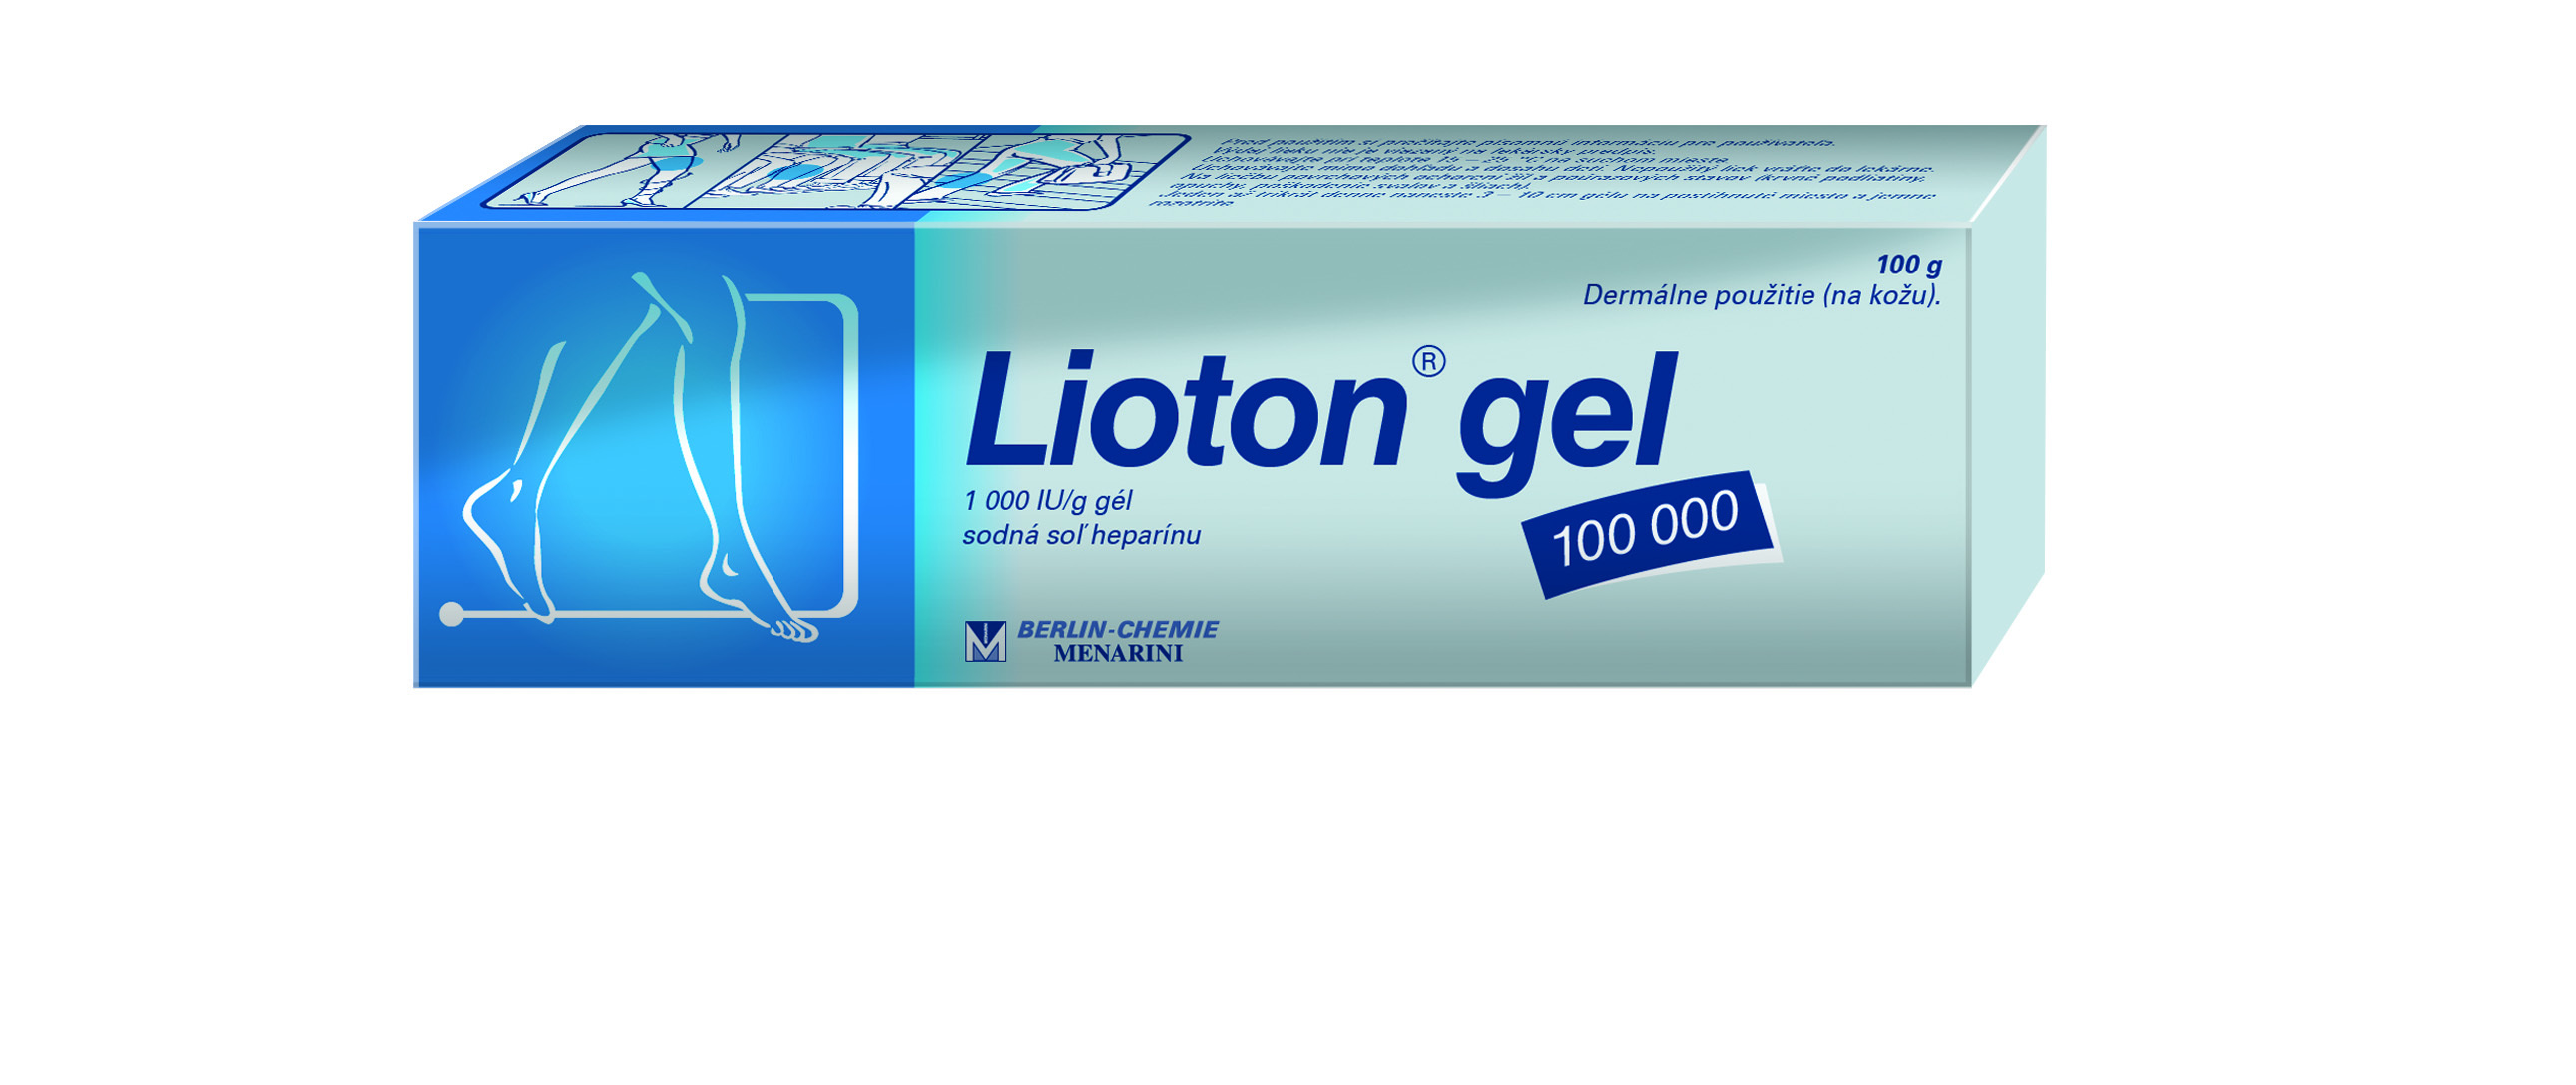 V akých baleniach je Lioton® gel 100 000 dostupný?